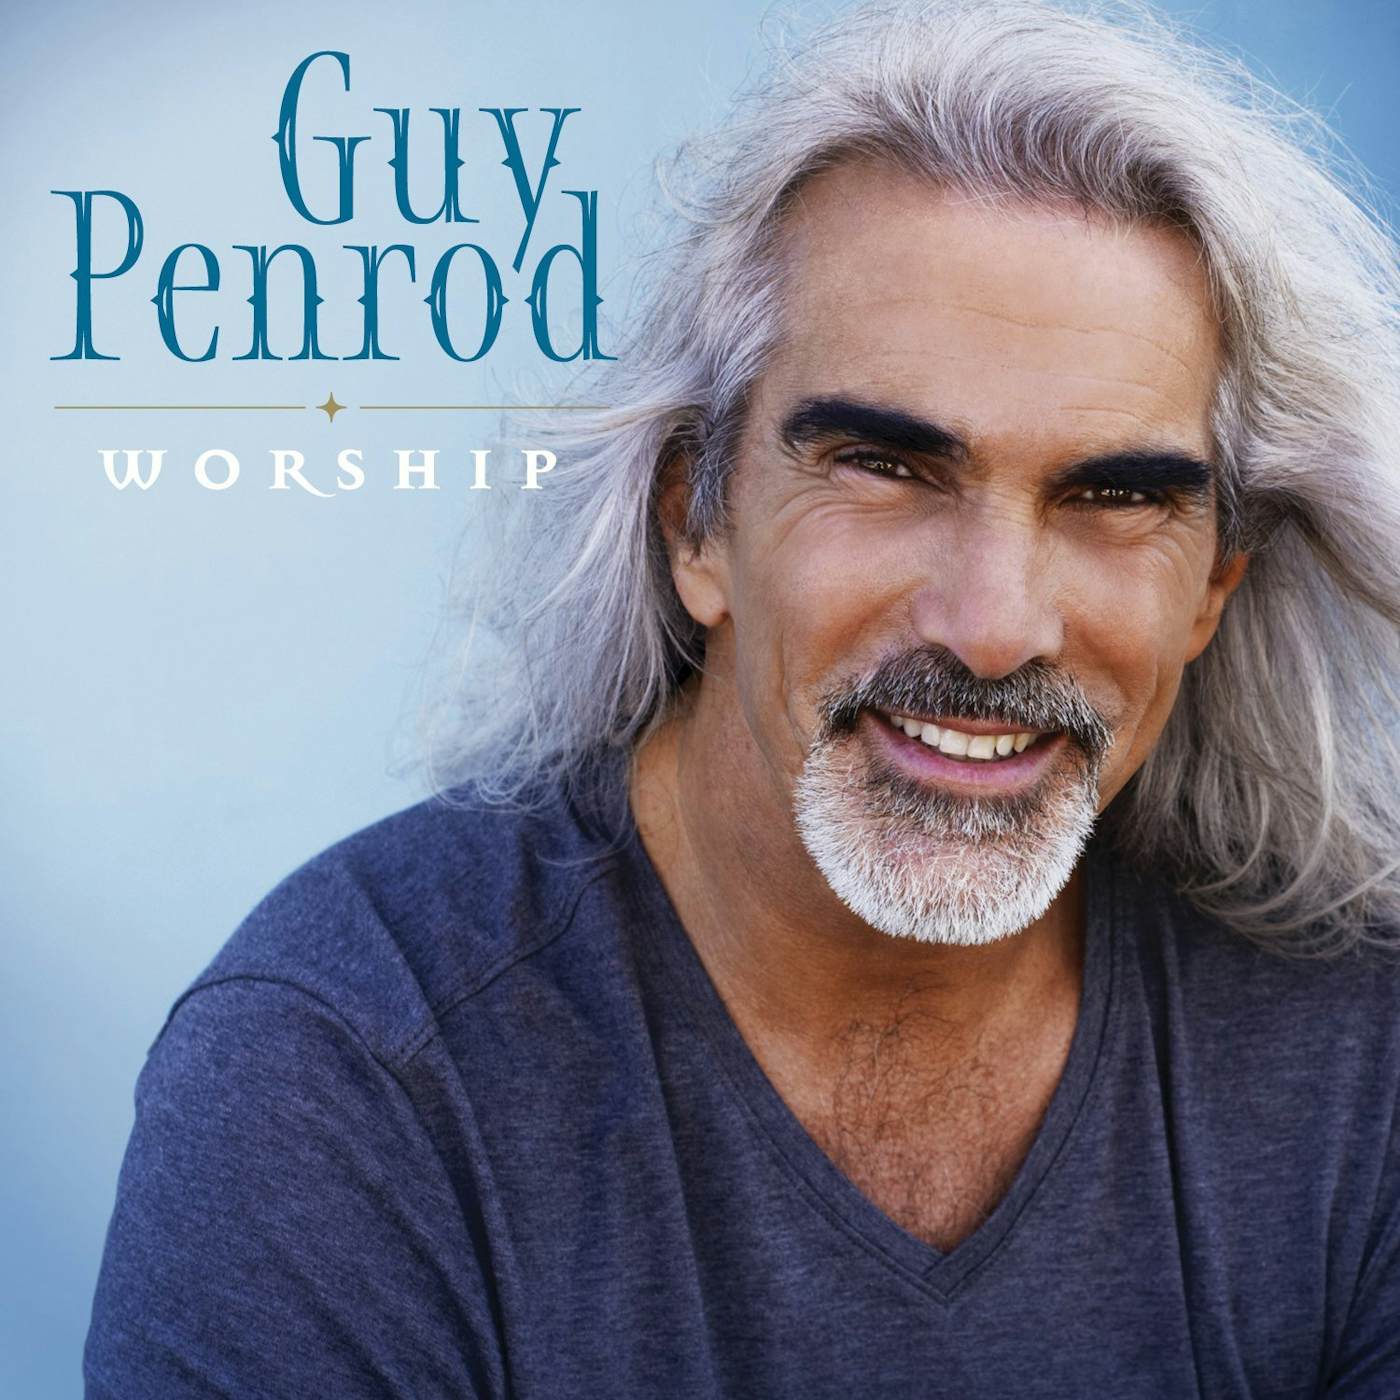 Guy Penrod WORSHIP CD